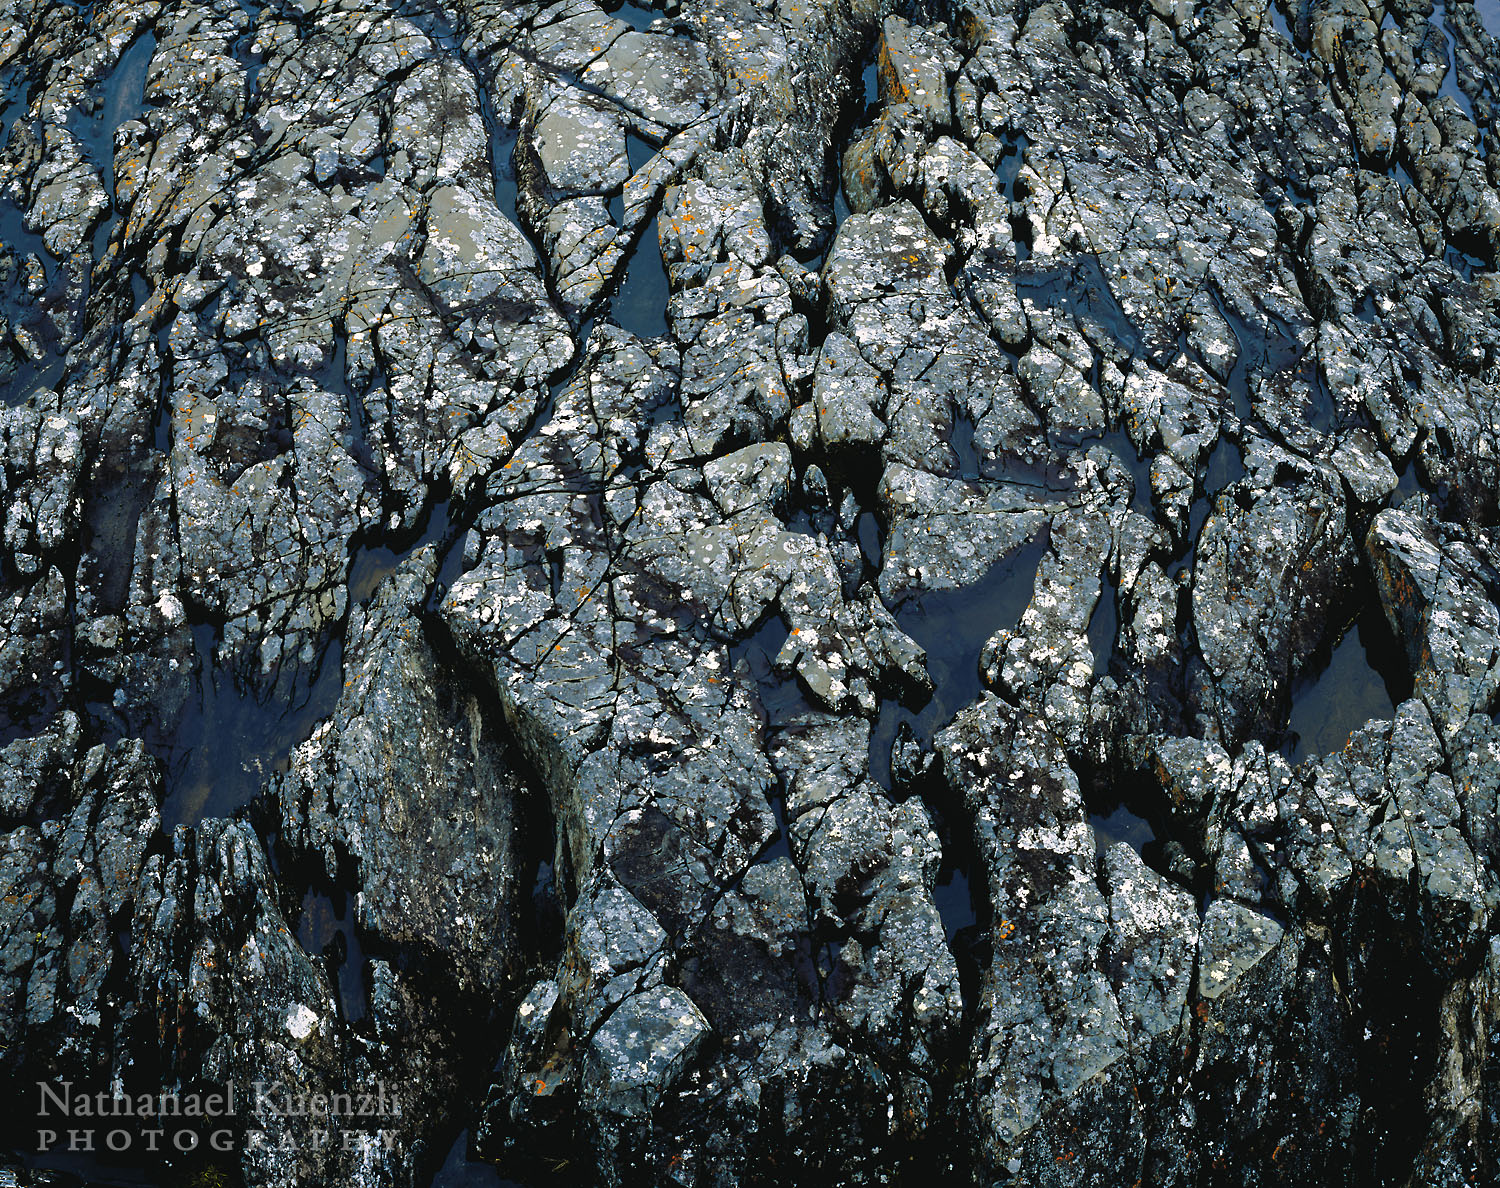    Rock Detail, Pukaskwa National Park, Ontario, Canada, June 2005   